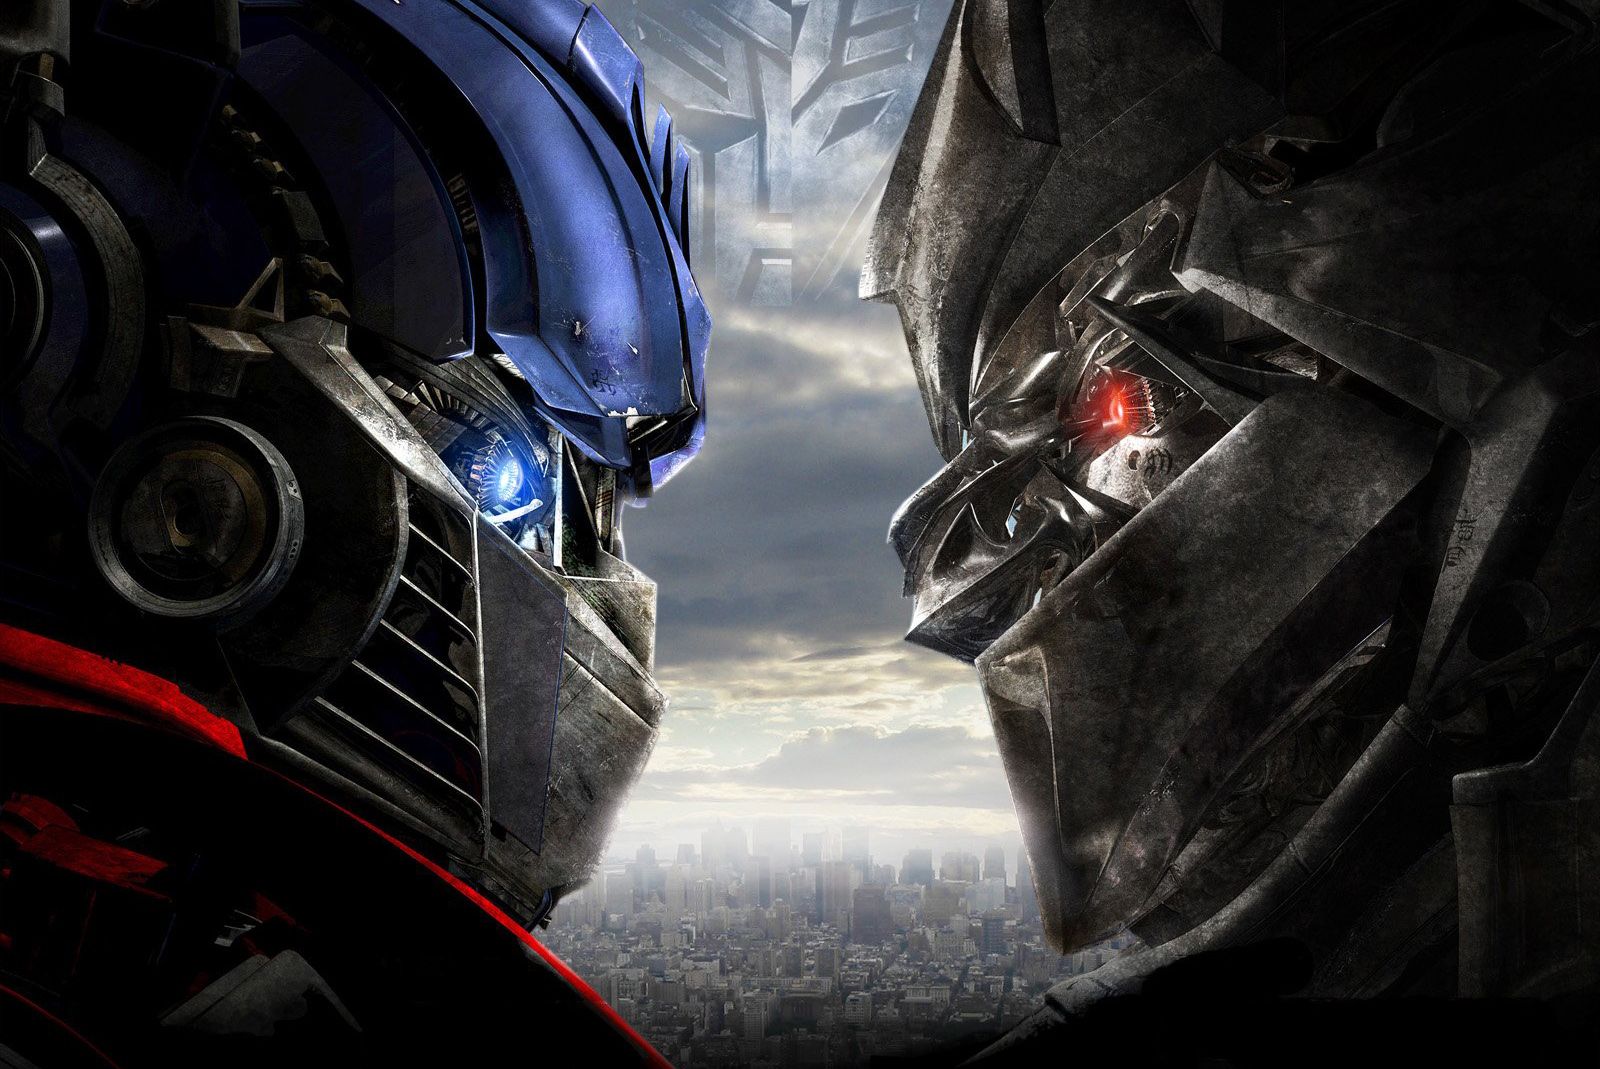 Transformers: veja ordem dos filmes e onde assistir